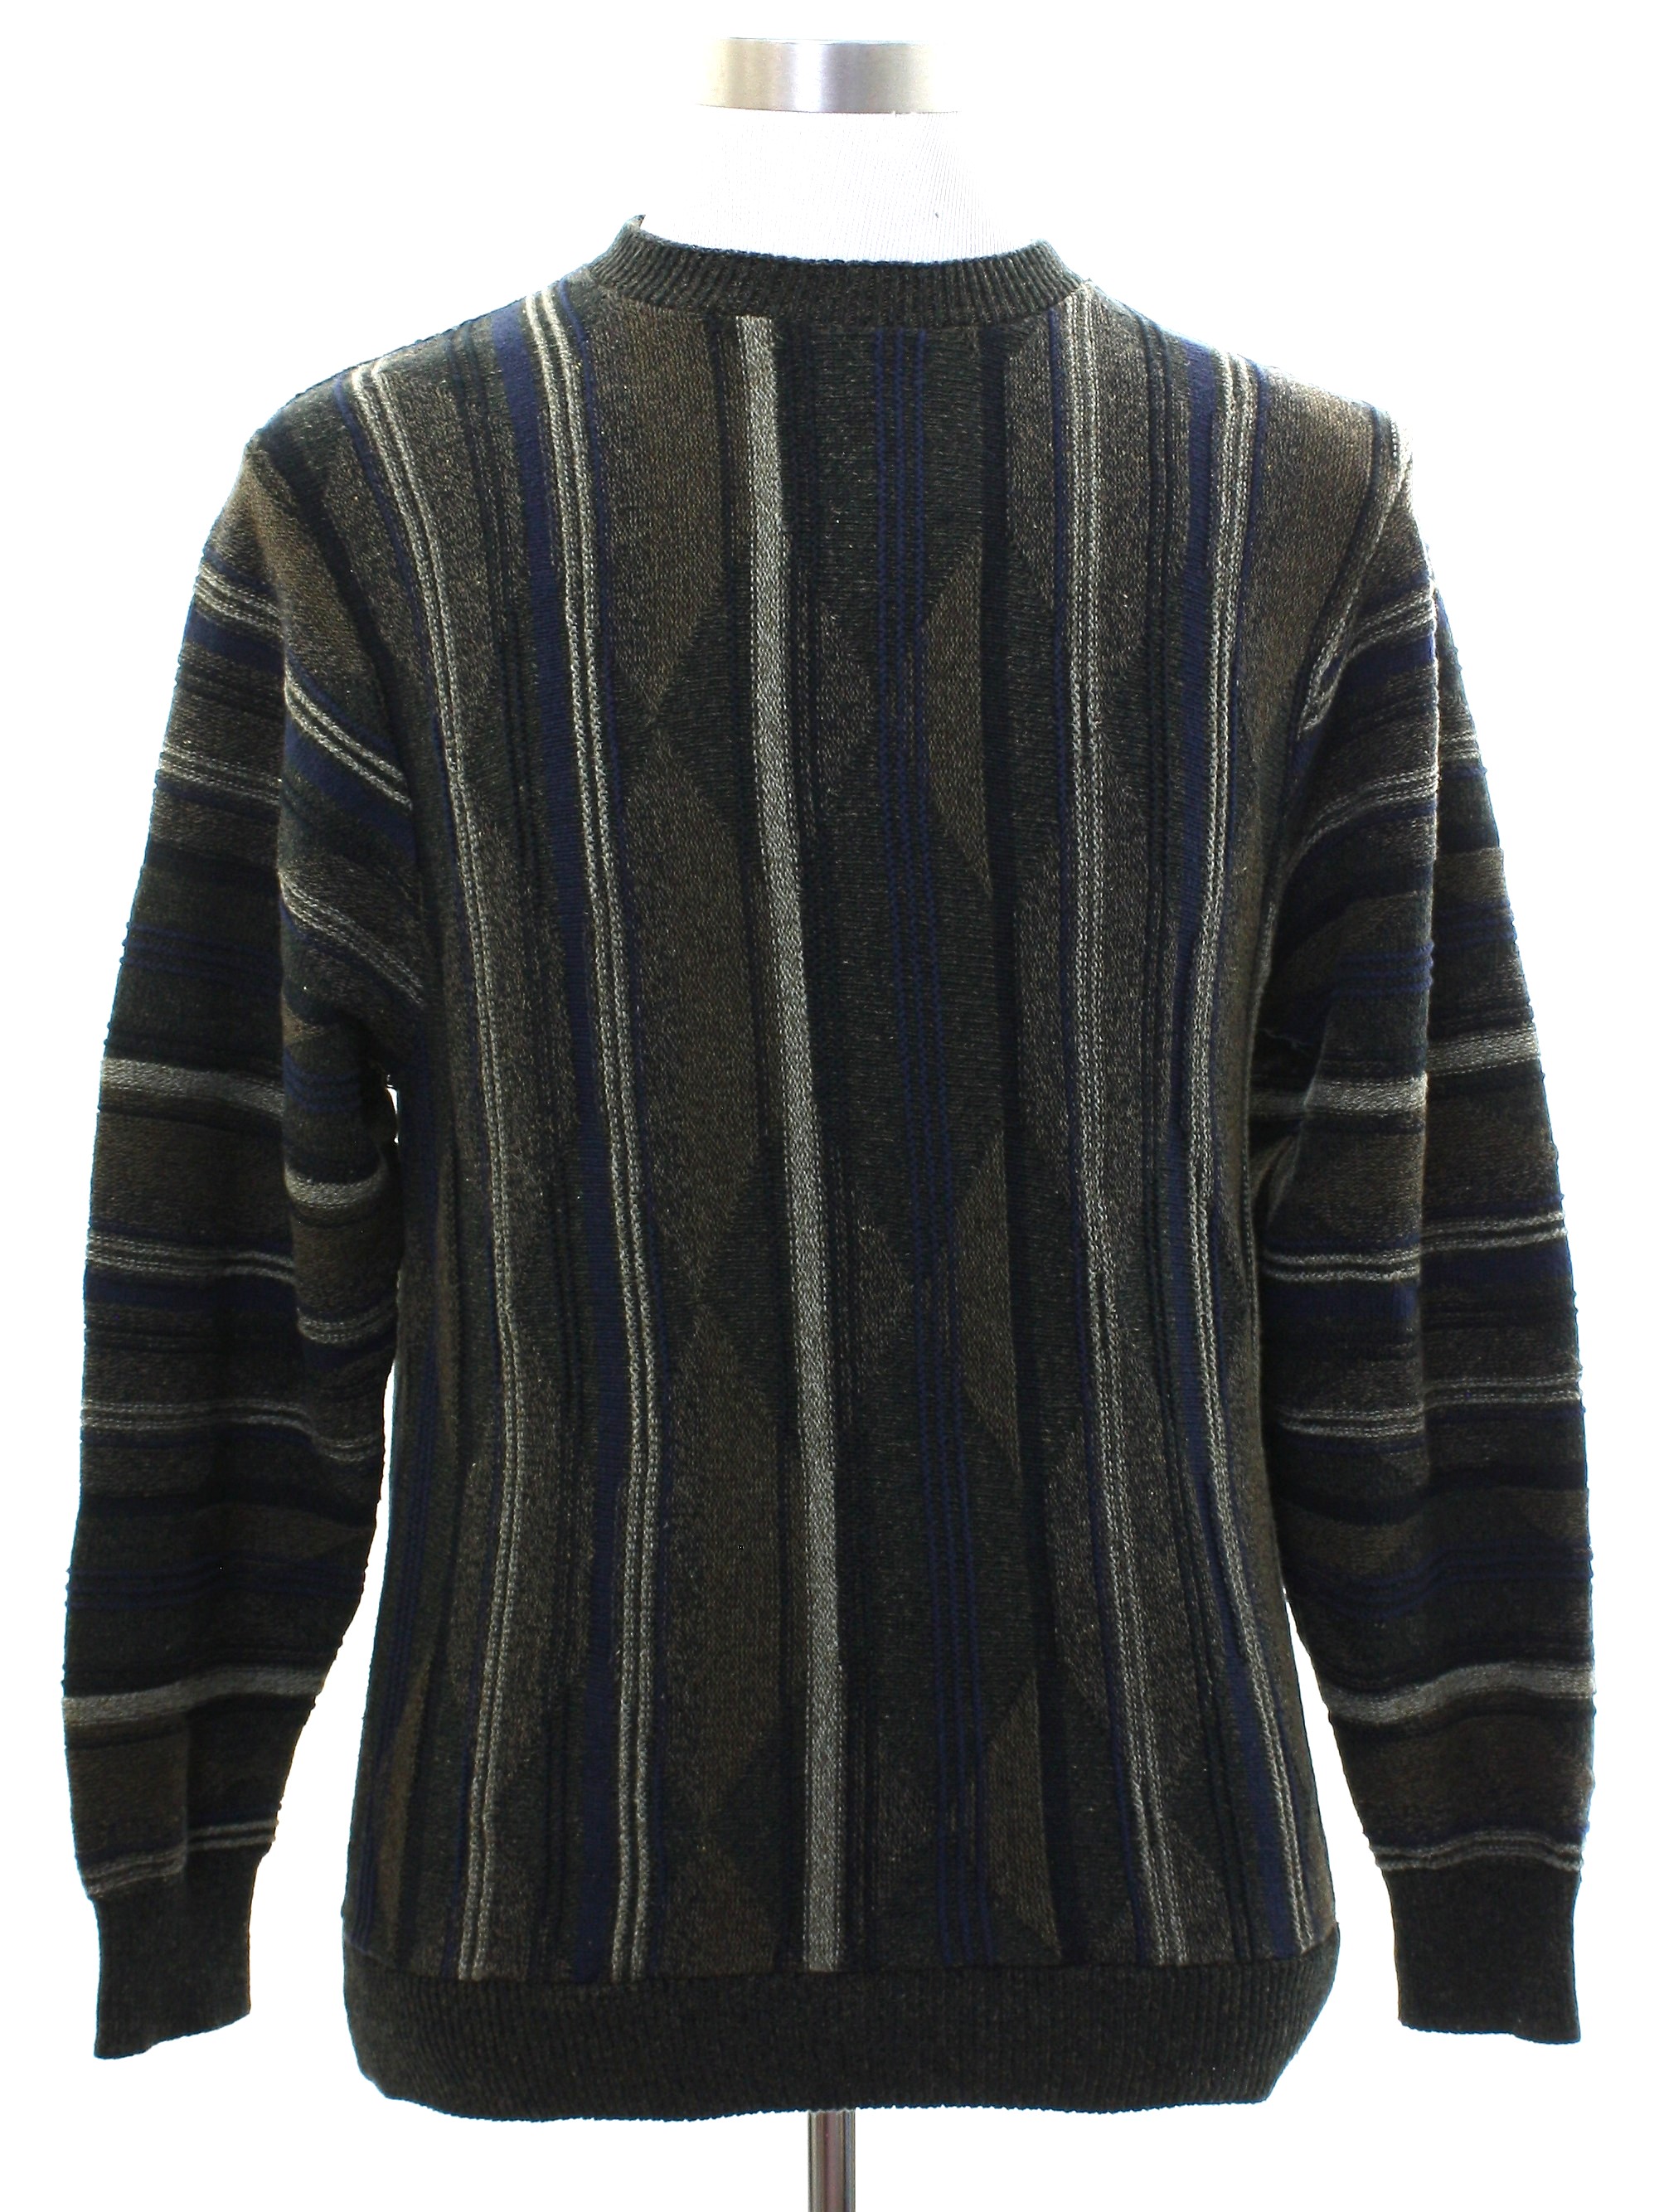 Haggar Nineties Vintage Sweater: Early 90s -Haggar- Mens dark olive ...